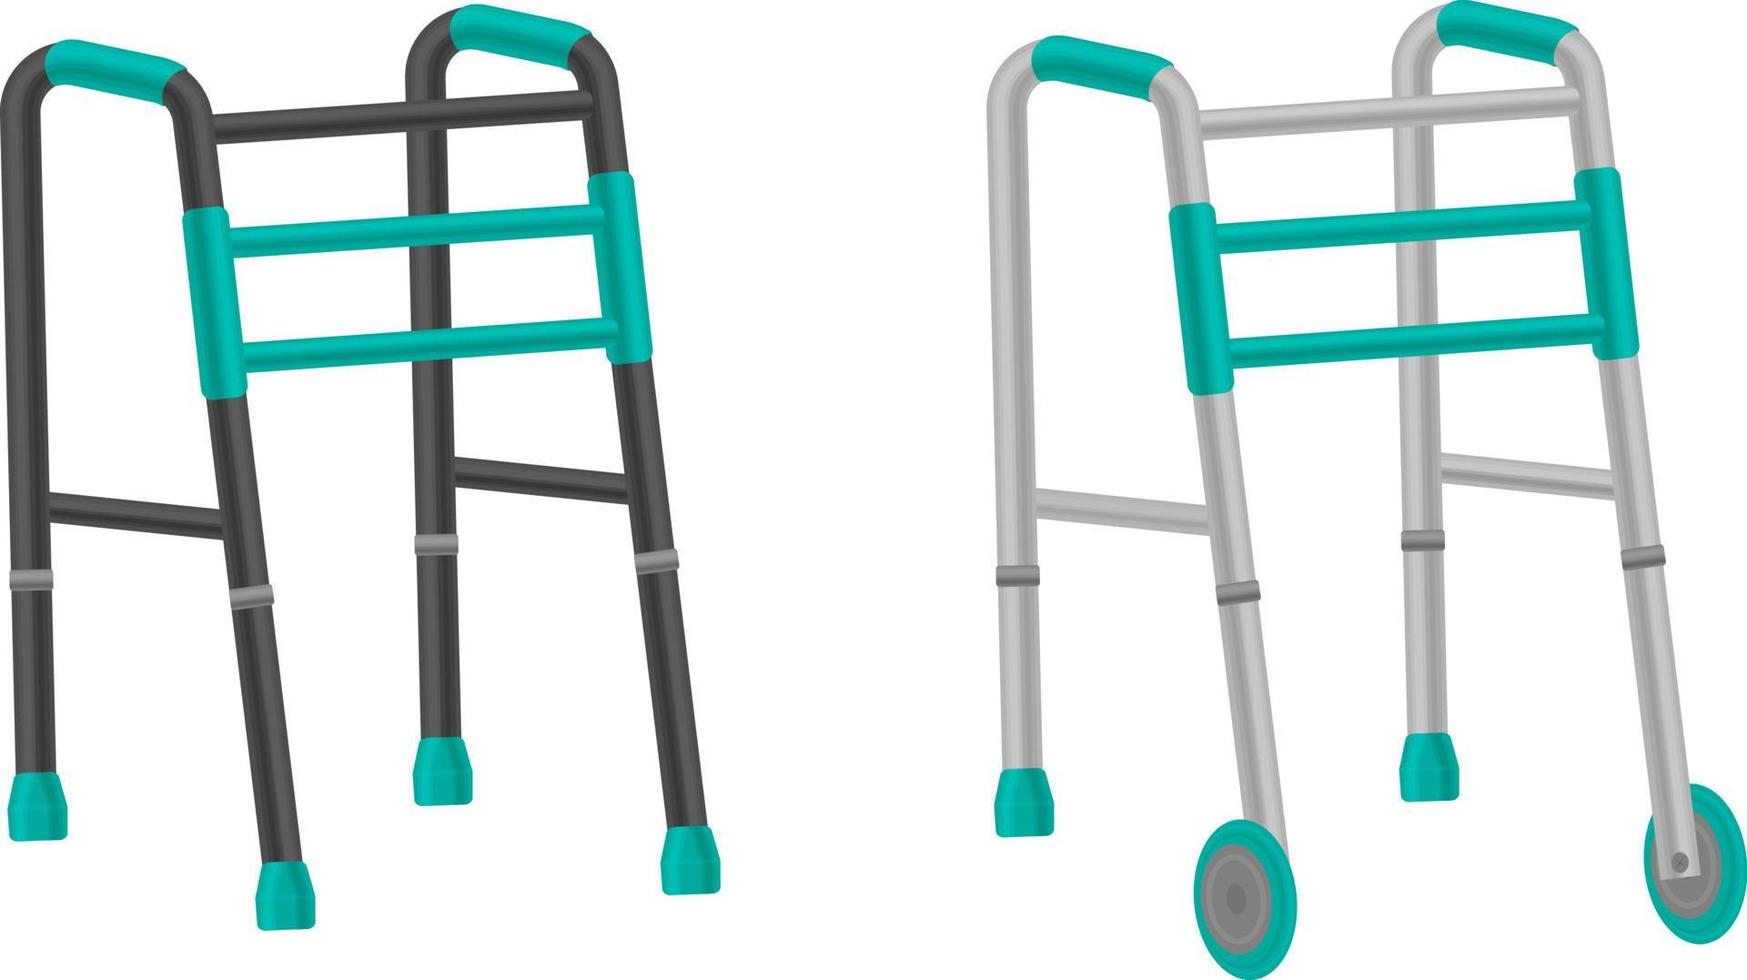 vektor uppsättning av vandrare för de äldre. en rollator för de äldre, som hjälper människor med funktionshinder till flytta runt om. de illustration är isolerat på vit bakgrund